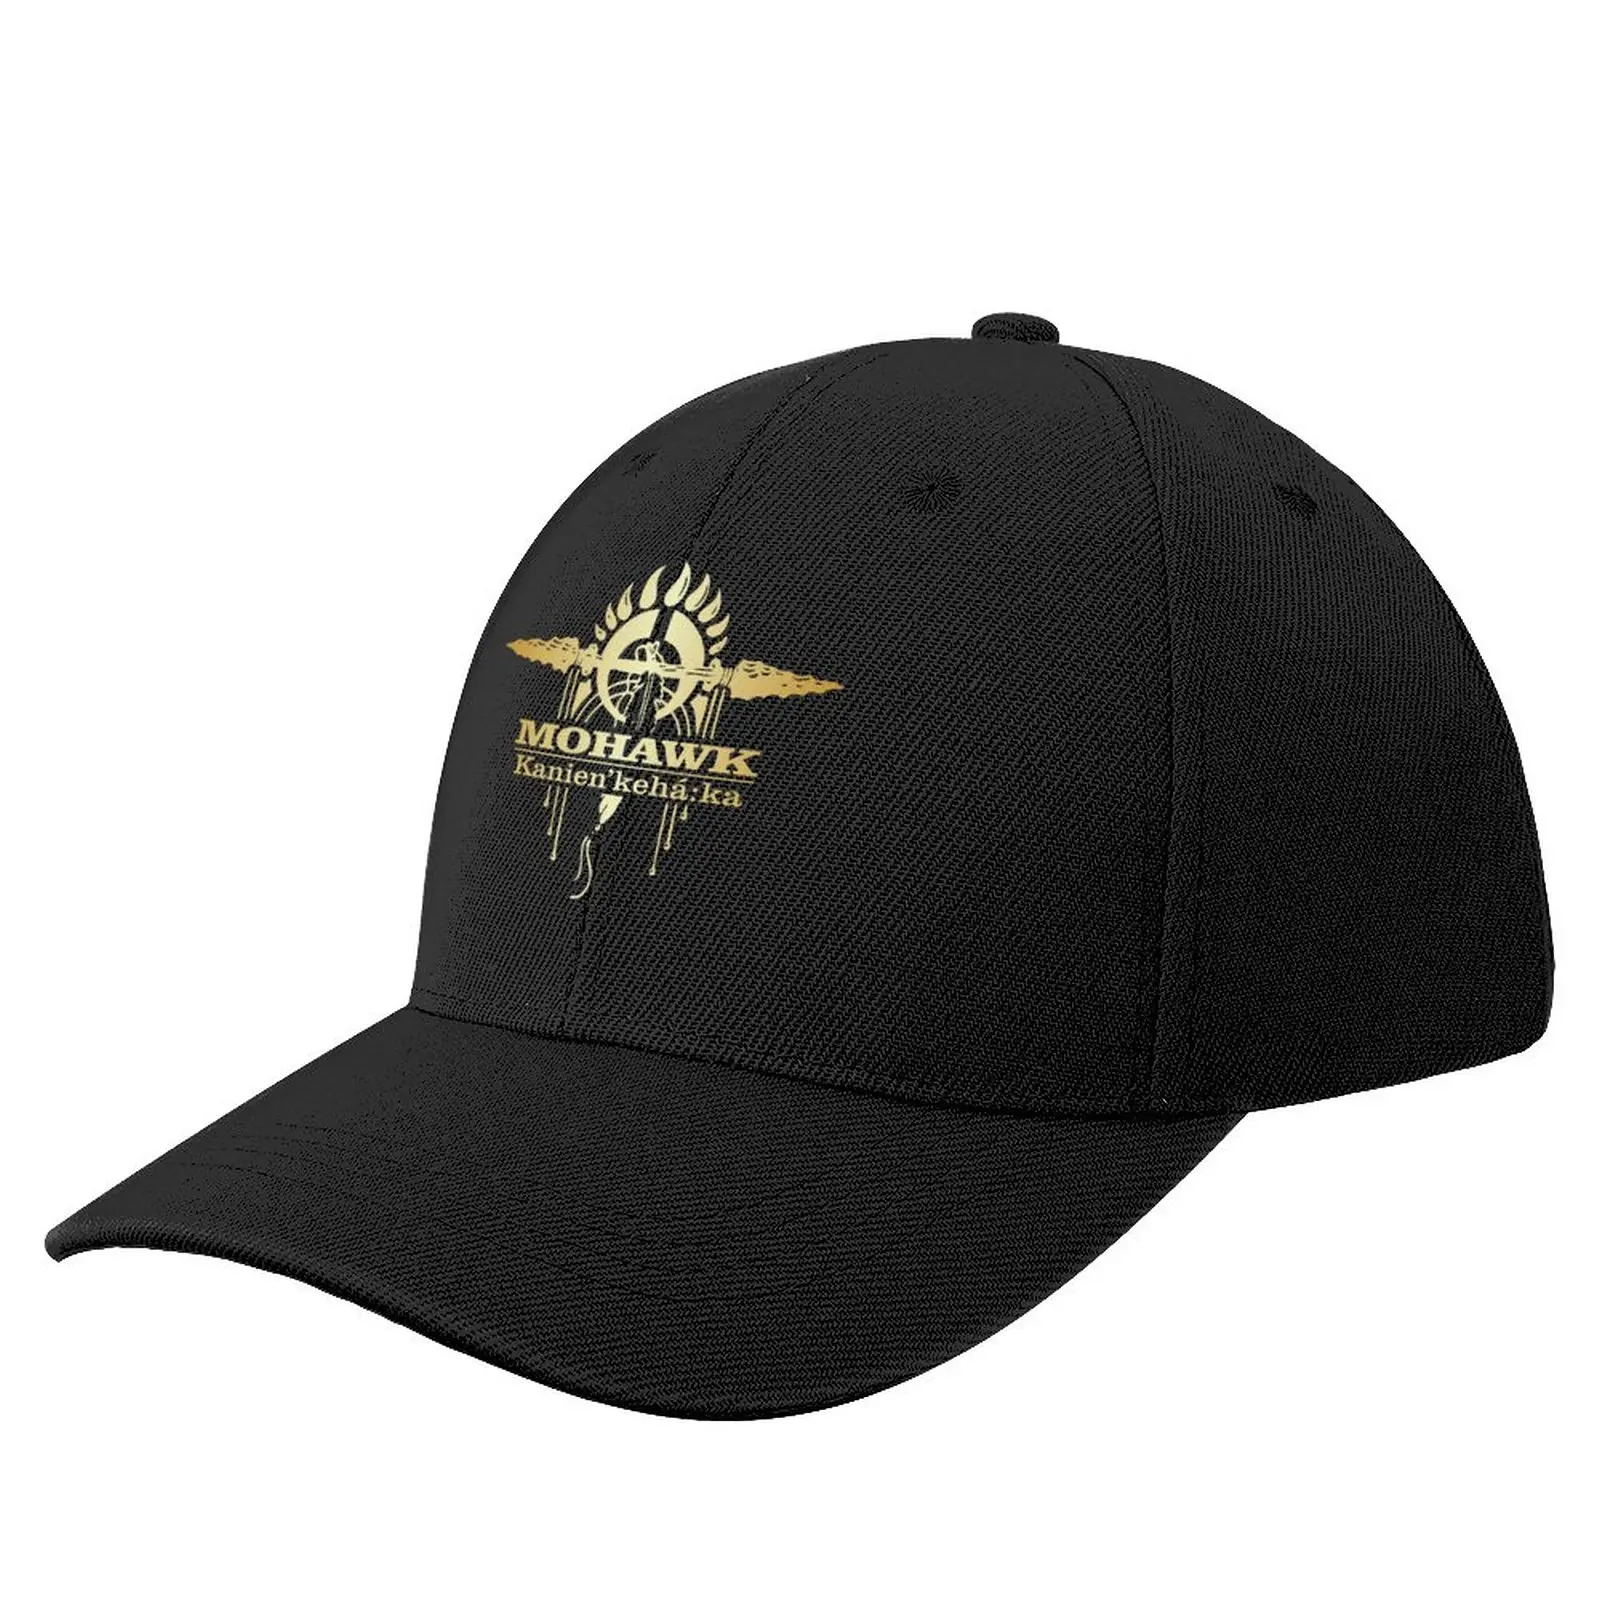 

Mohawk 2 (NA) Baseball Cap Male Trucker Cap derby hat Mountaineering tea hats Hat For Women Men's